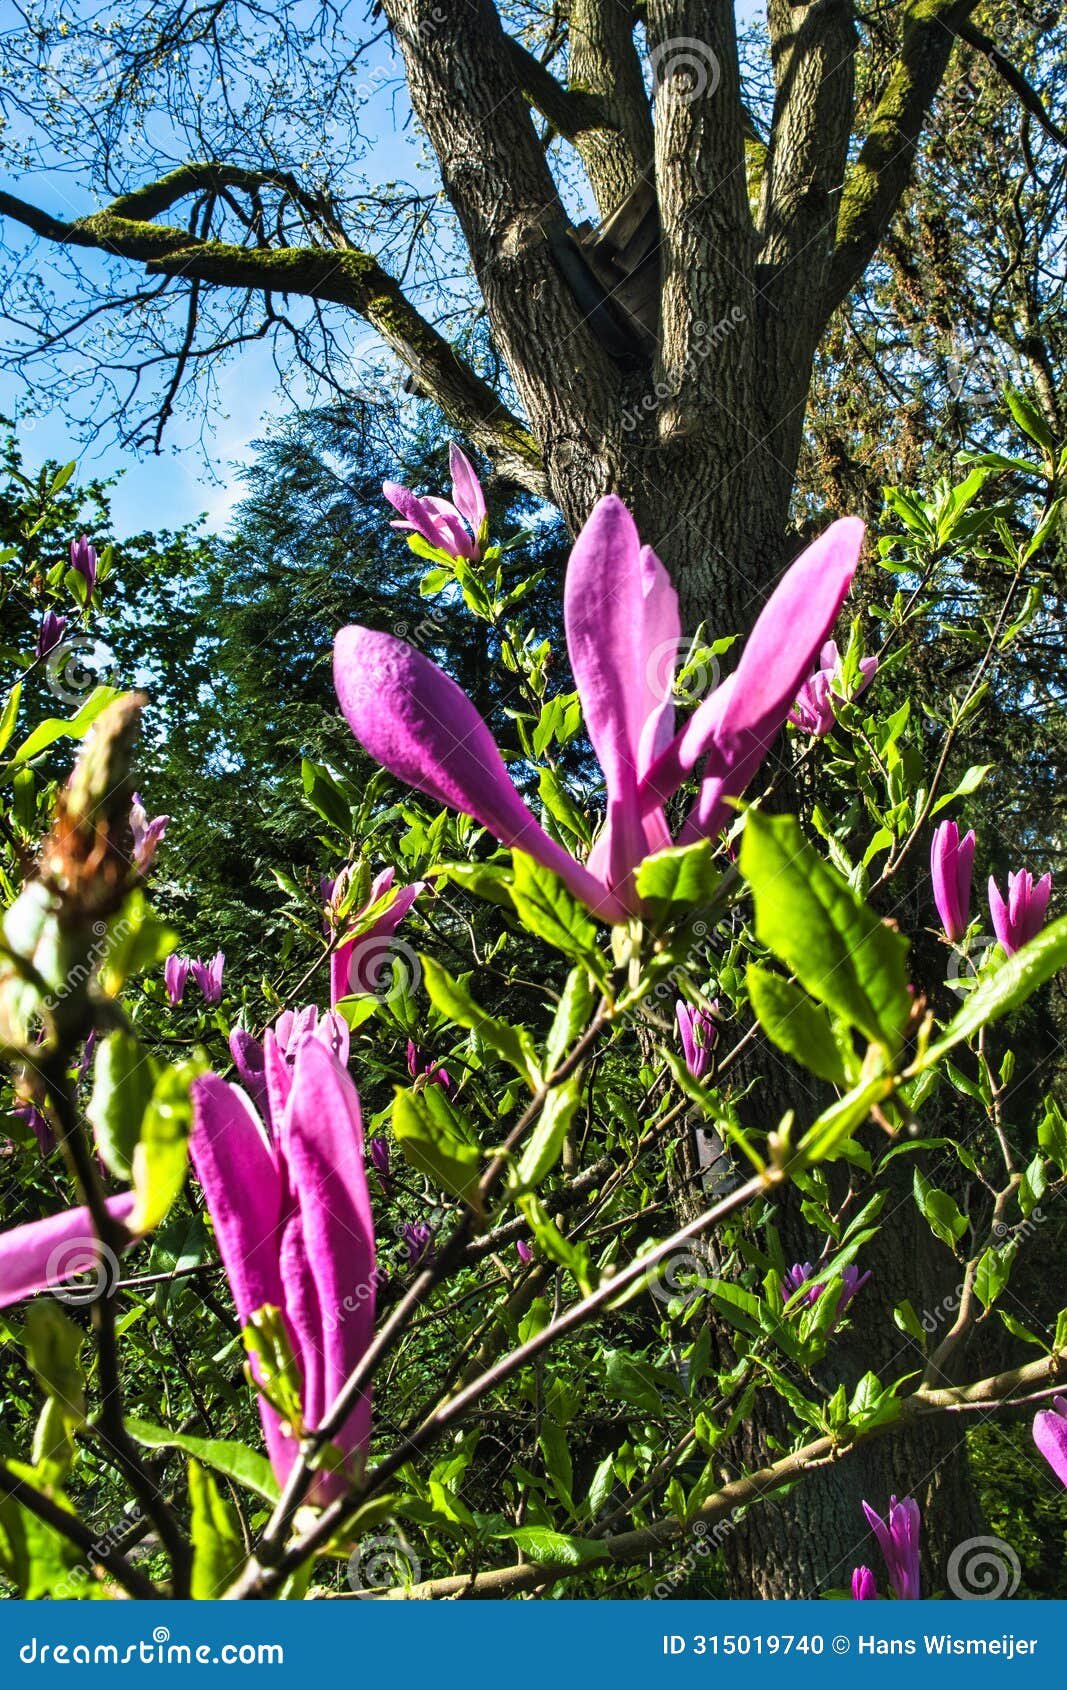 lowers of magnolia liliiflora